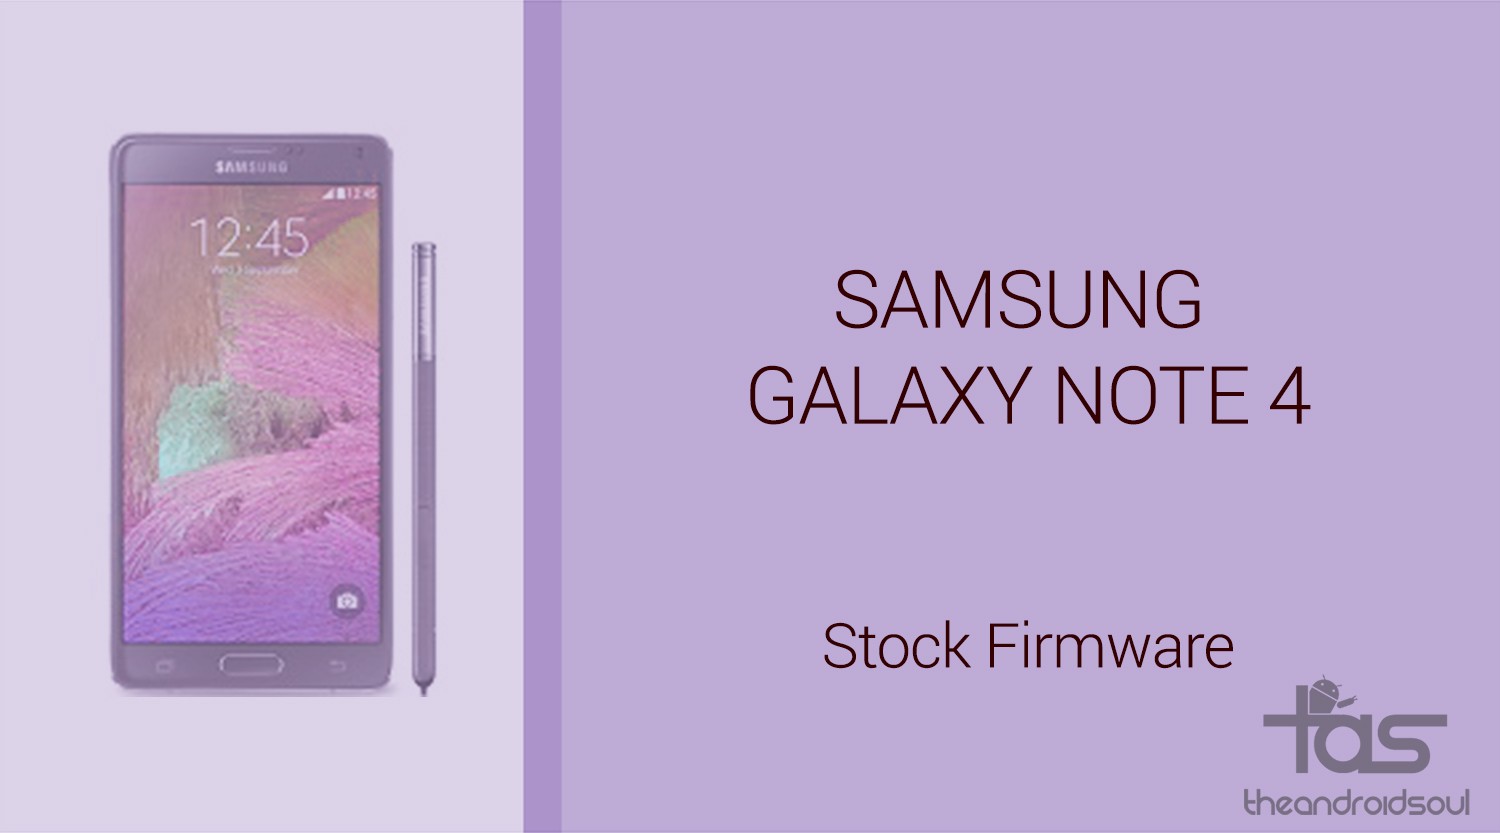 Descargue el firmware estándar de Galaxy Note 4;  Se agregaron N910PVPS4DPJ1, N910TUVU2EPJ2 y N910T3UVU3EPJ2